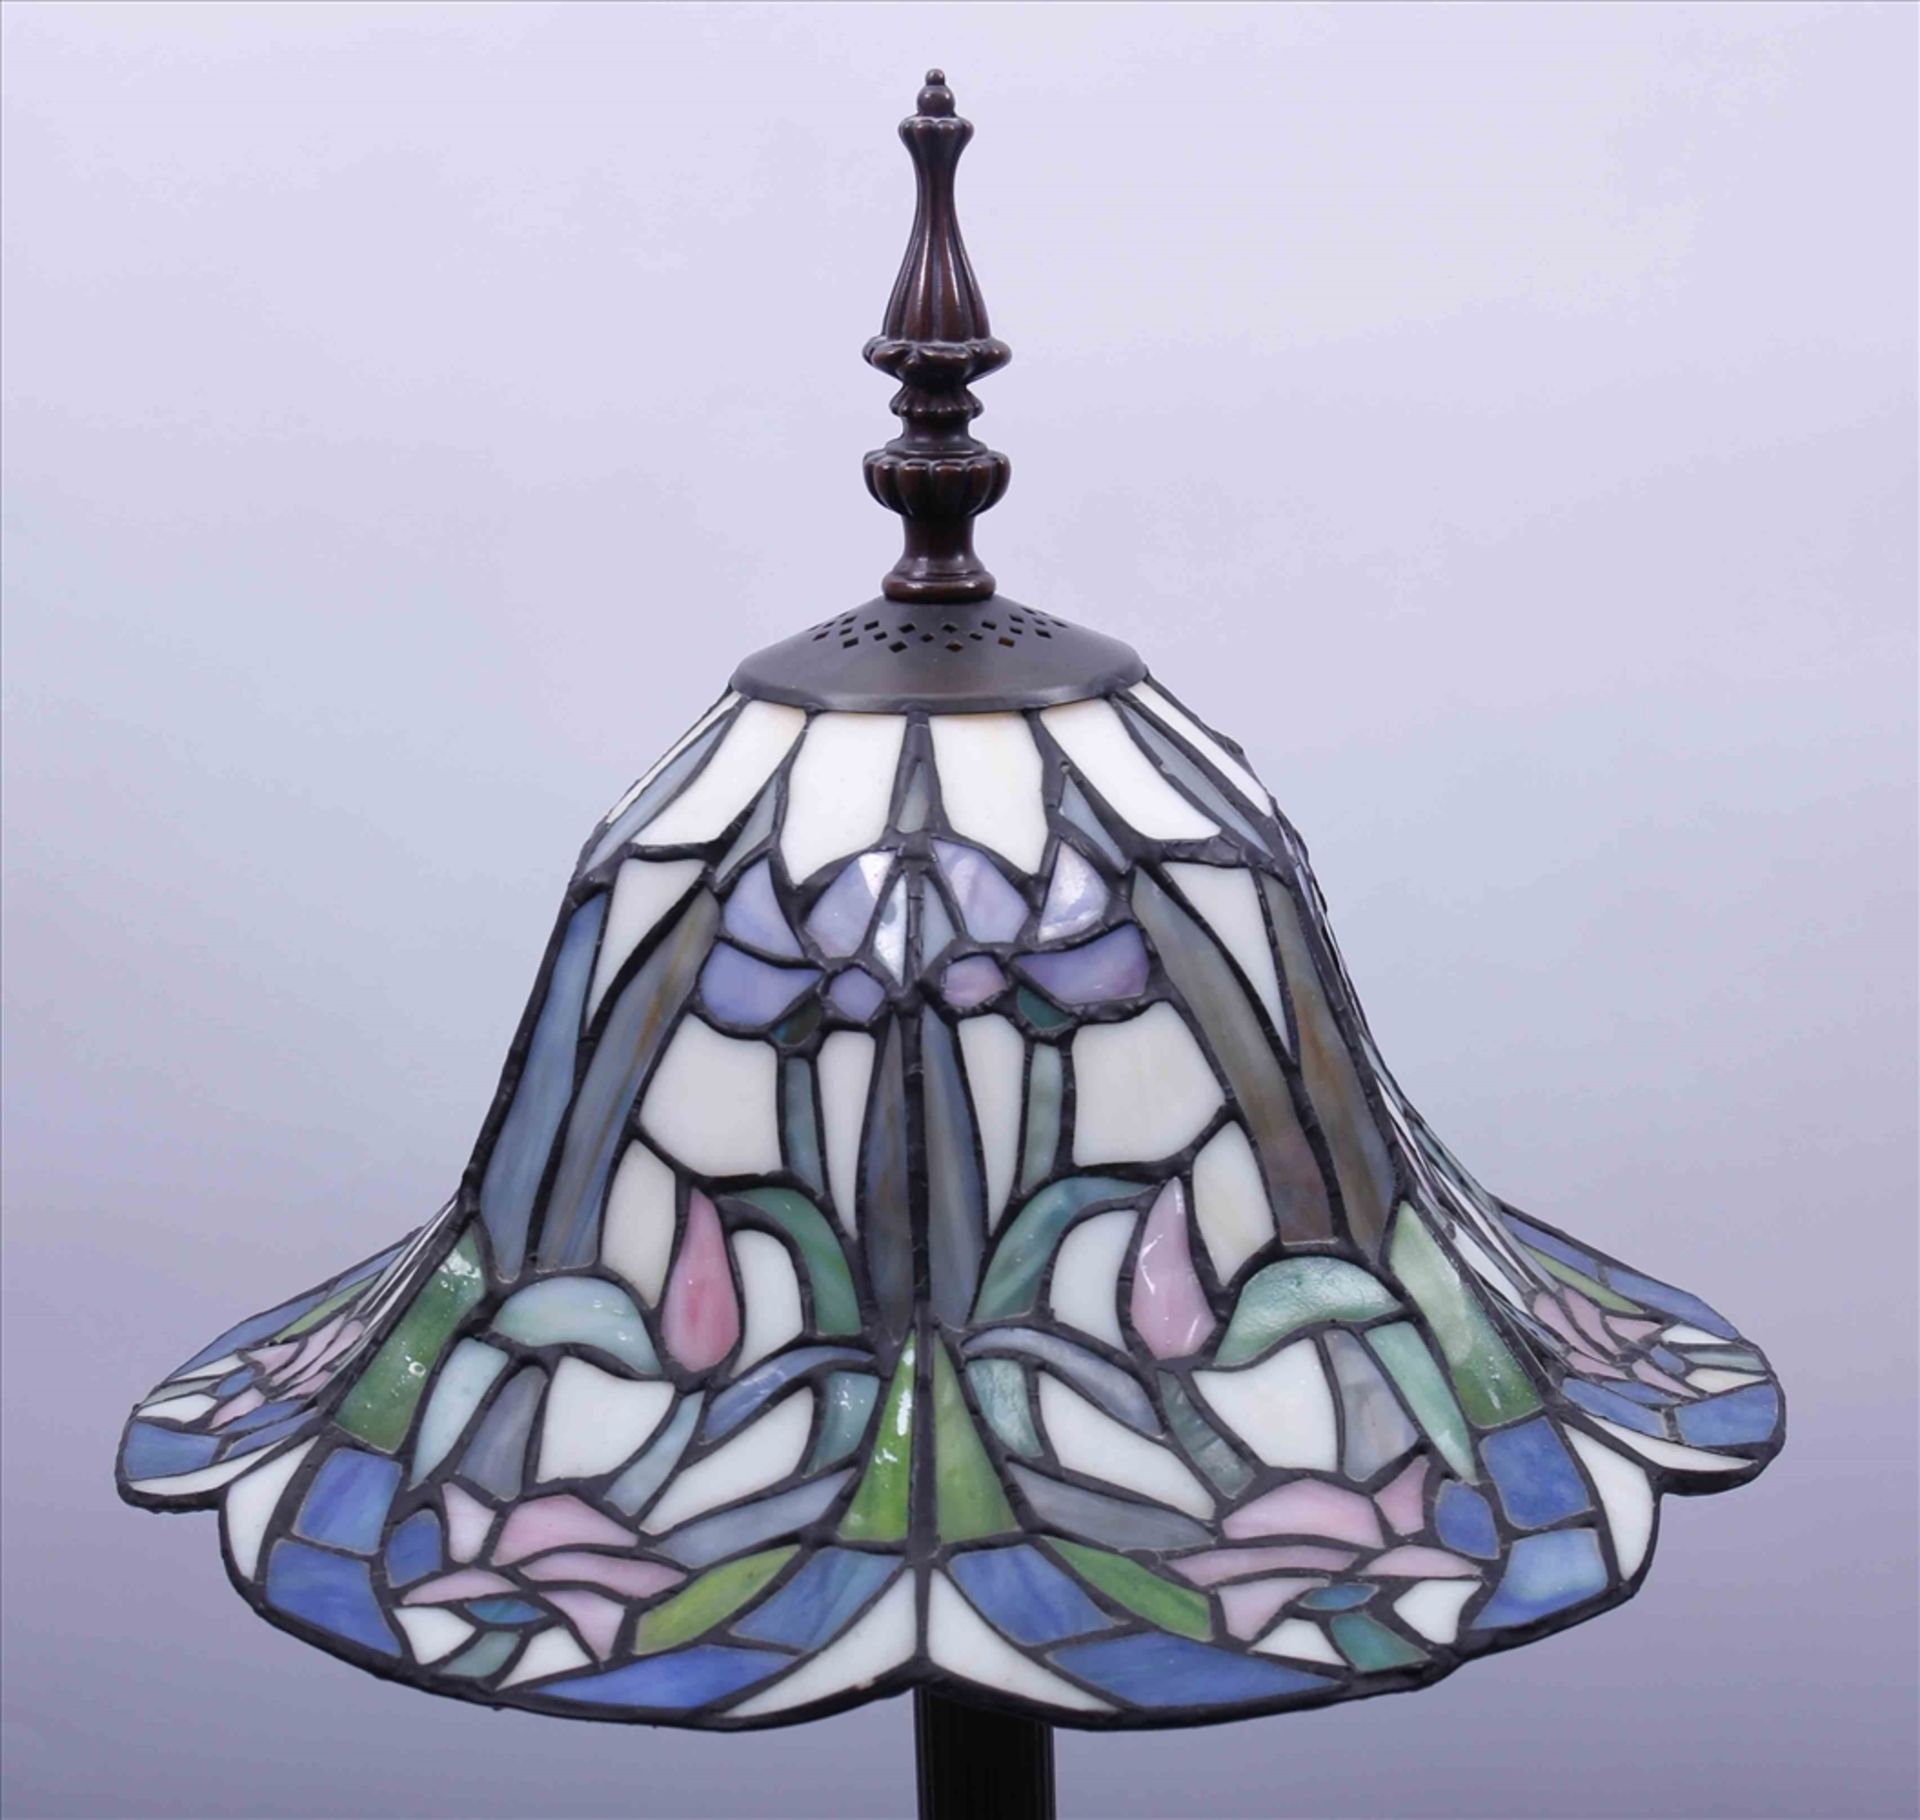 Tischlampe, 20.Jh., Tiffany-Stil, kannelierter Schaft, Bleiglasschirm, H: 71cm - Bild 2 aus 2